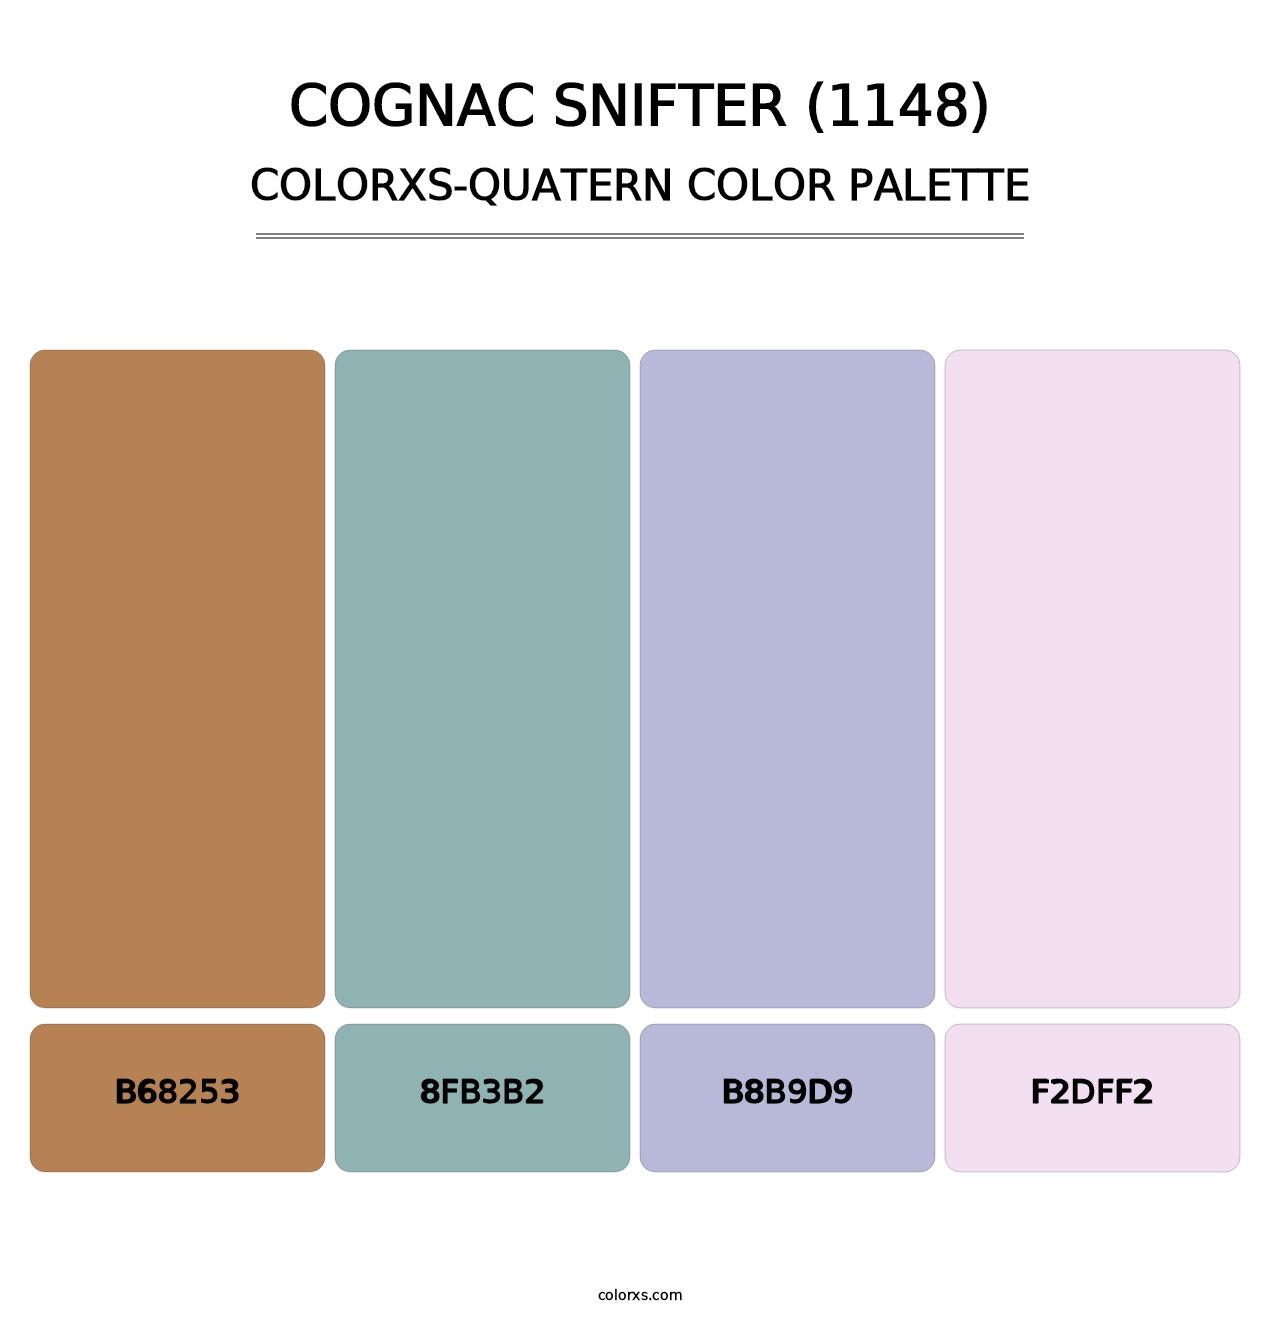 Cognac Snifter (1148) - Colorxs Quatern Palette